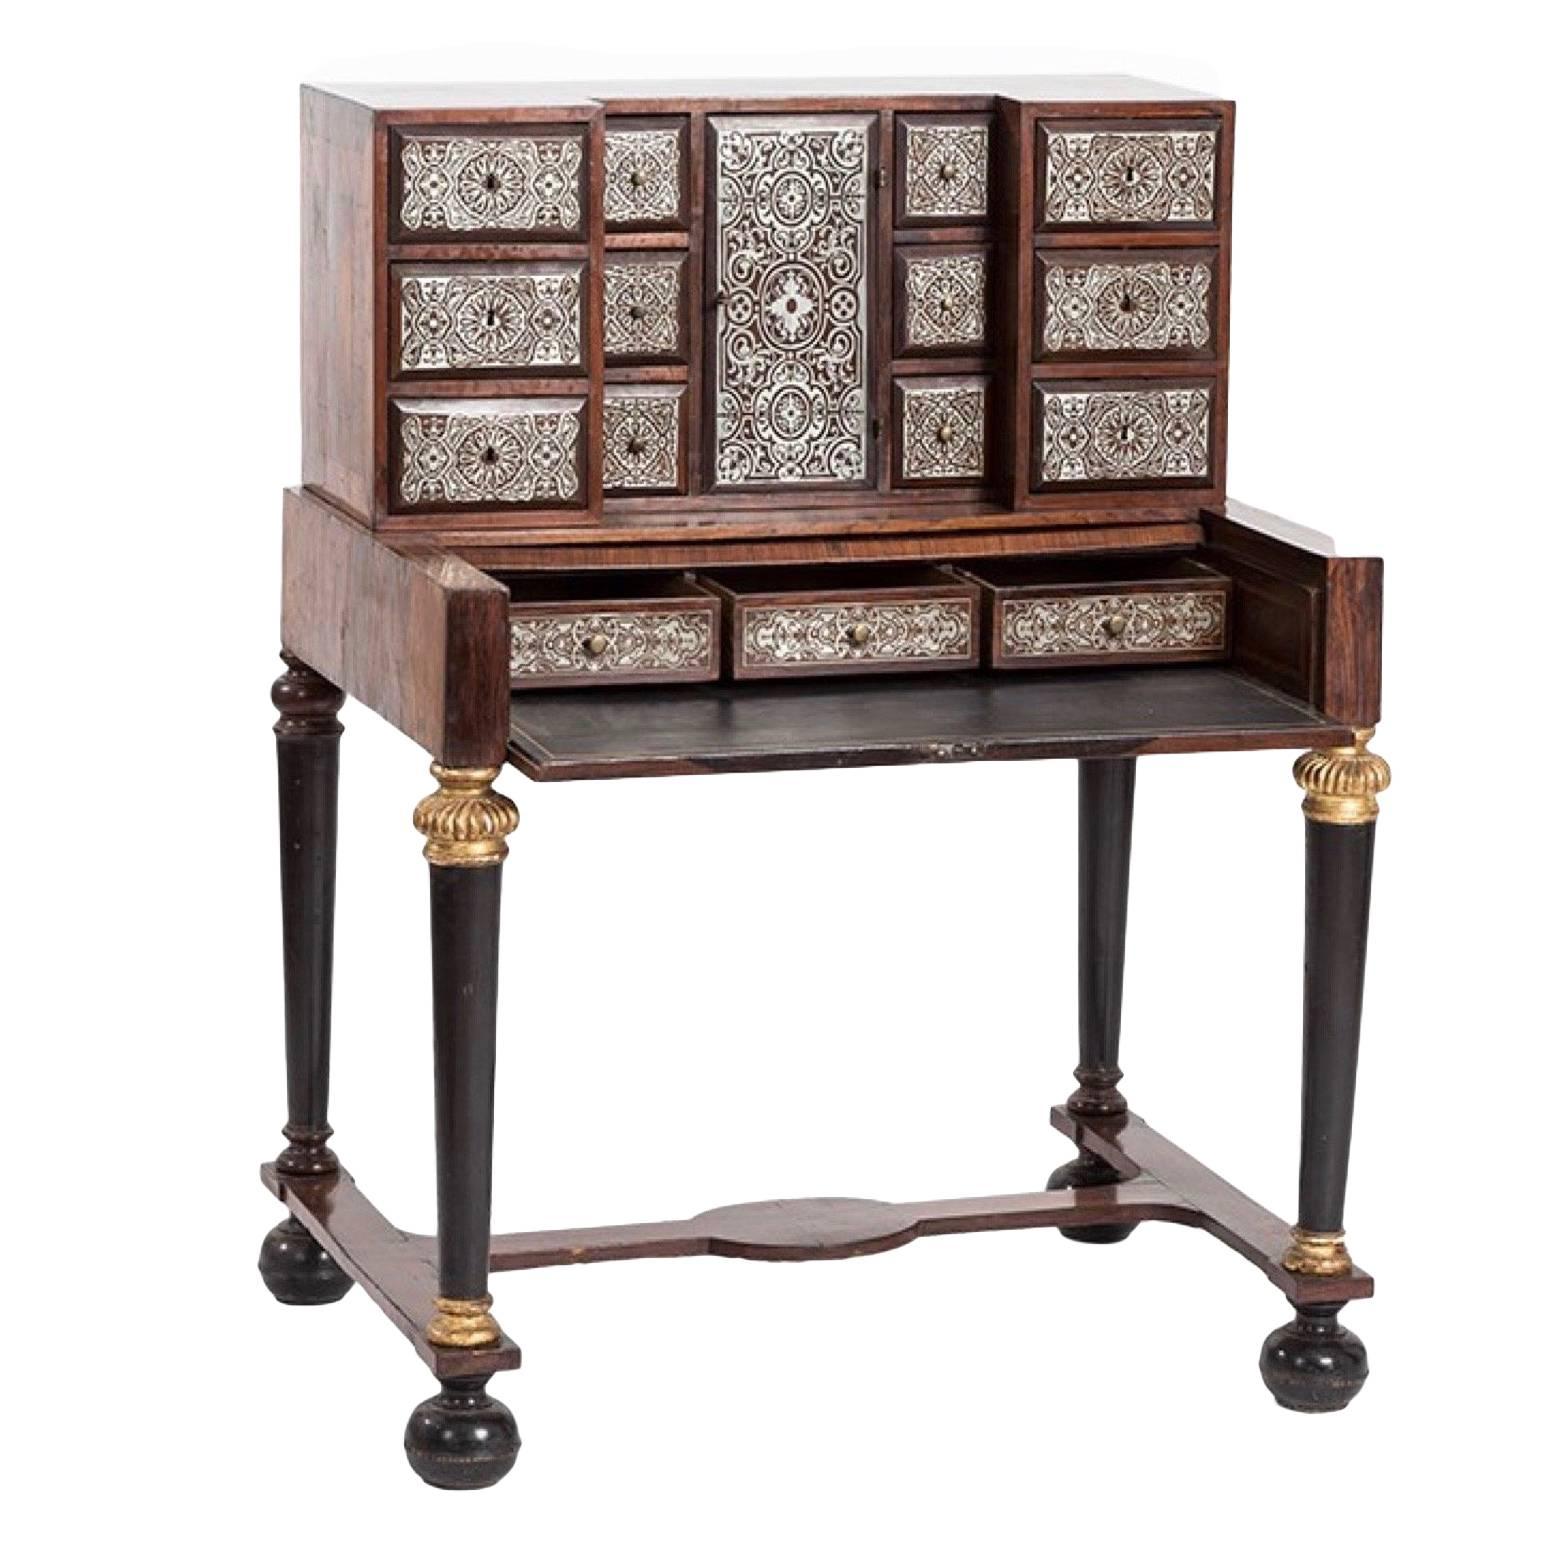 Wunderschöner Schreibtisch/Schrank aus Zinn mit Intarsien aus dem 18. Jahrhundert